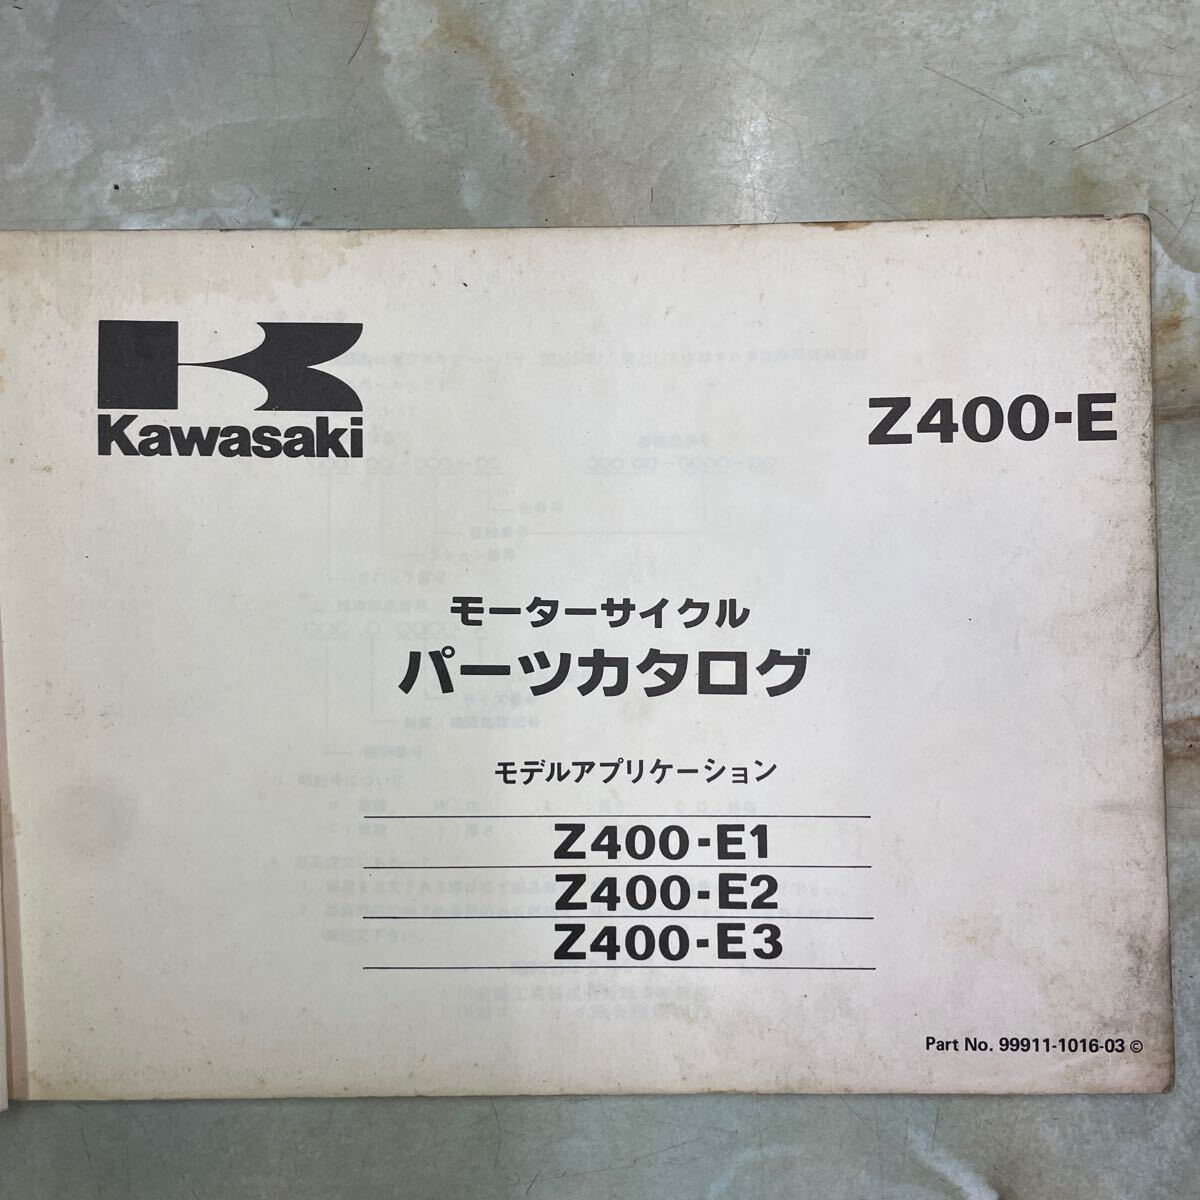  Kawasaki Z400FX E1~E3 каталог запчастей 